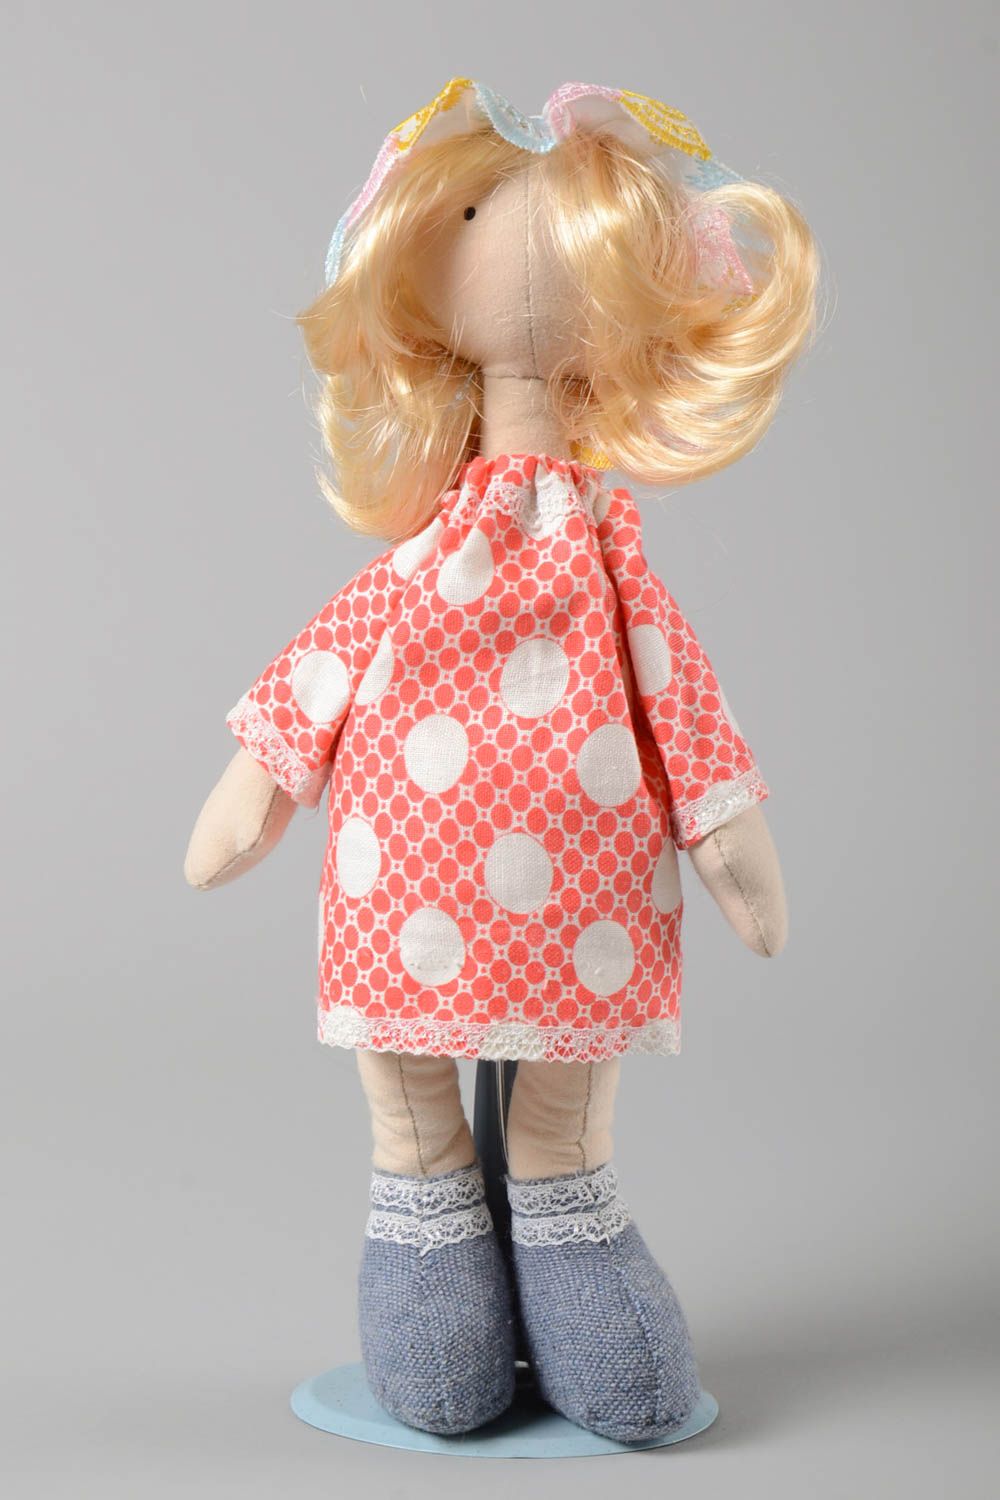 Handmade Kinder Puppe Spielsache für Kinder Deko Puppe Mädchen im roten Kleid foto 2